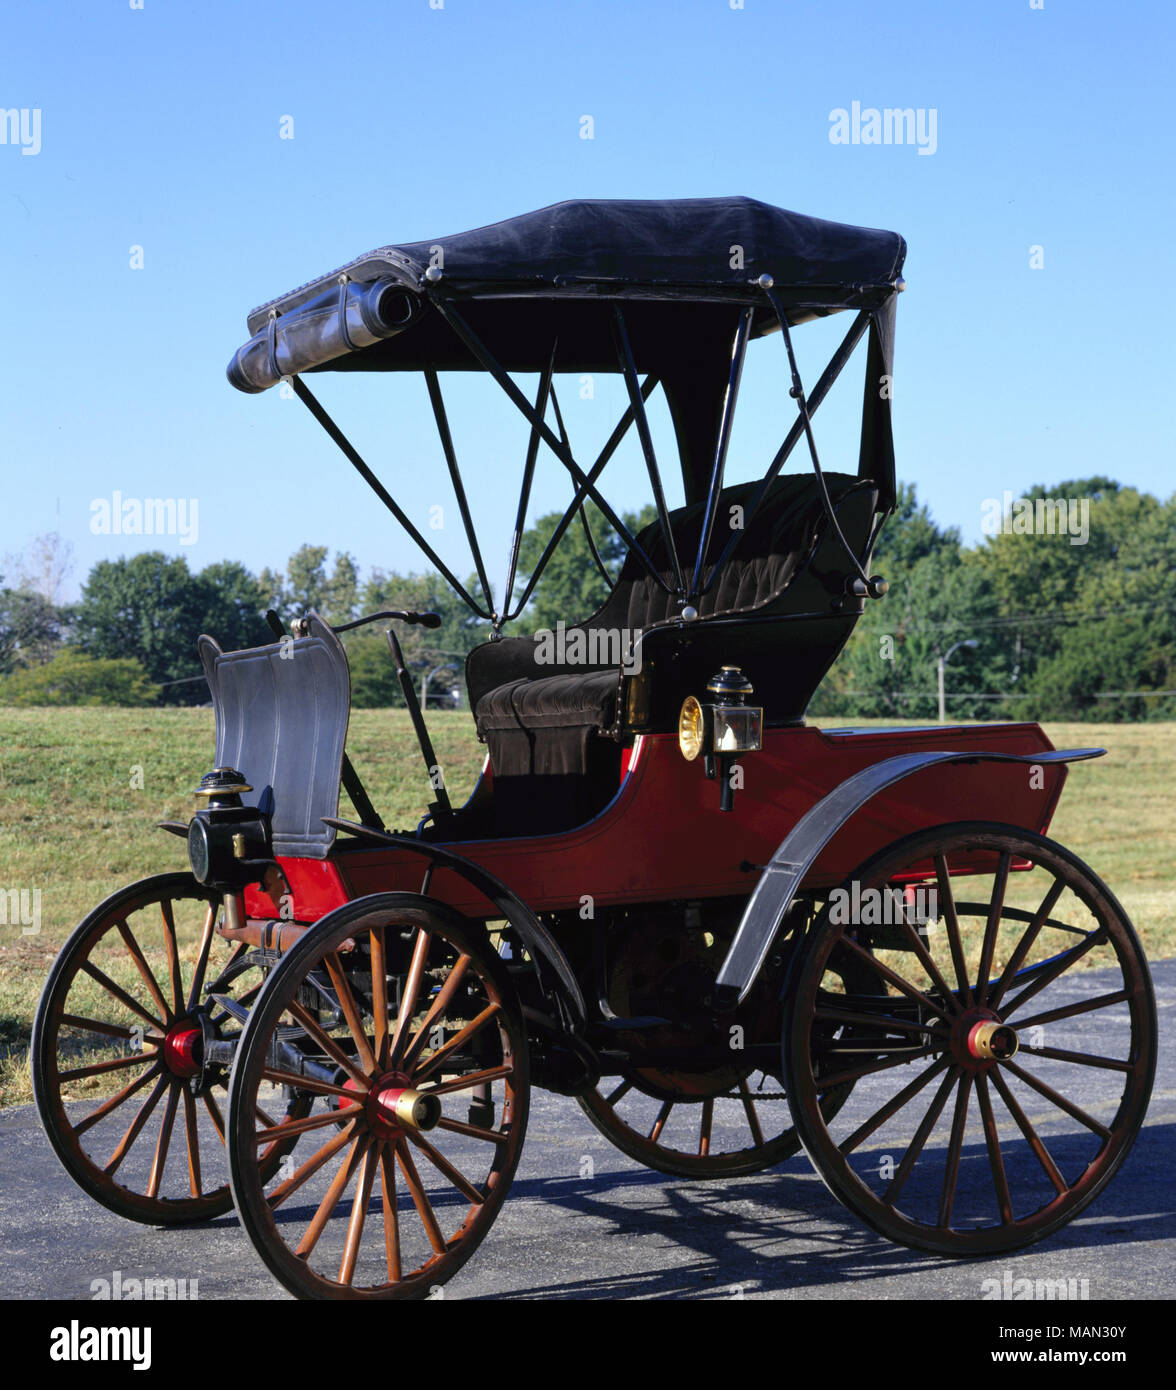 Inizio automobile fatta da san Luigi benzina Motor Company, essenzialmente un buggy con un motore Titolo: St. Louis benzina Motor Company automobile . circa 1900. San Luigi benzina Motor Company Foto Stock